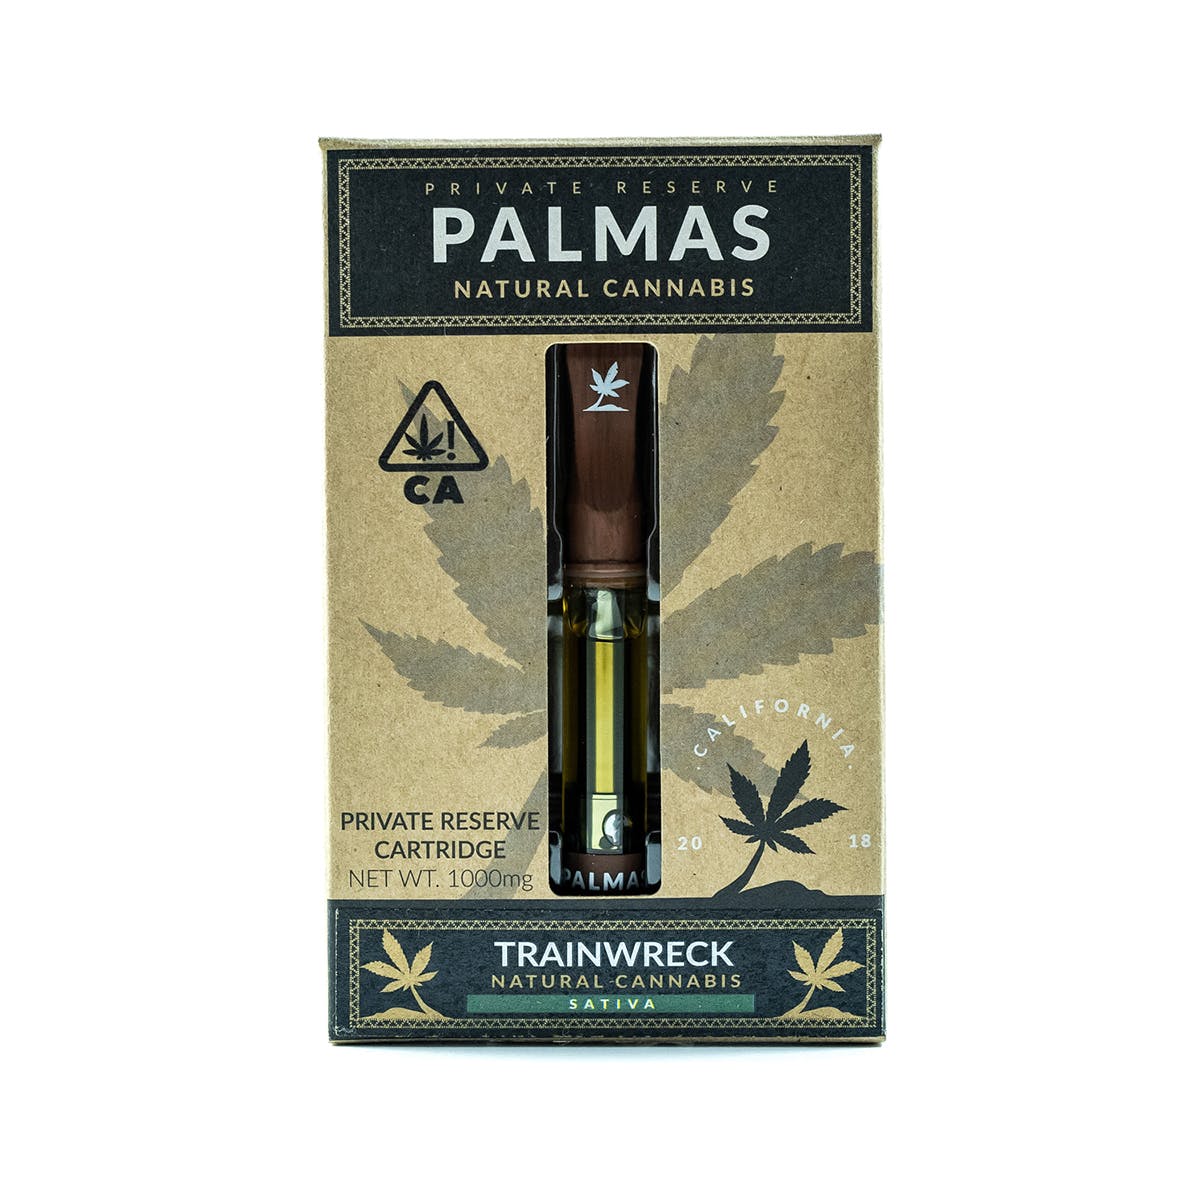 marijuana-dispensaries-kush-klub-collective-in-los-angeles-palmas-private-reserve-cartridge-trainwreck